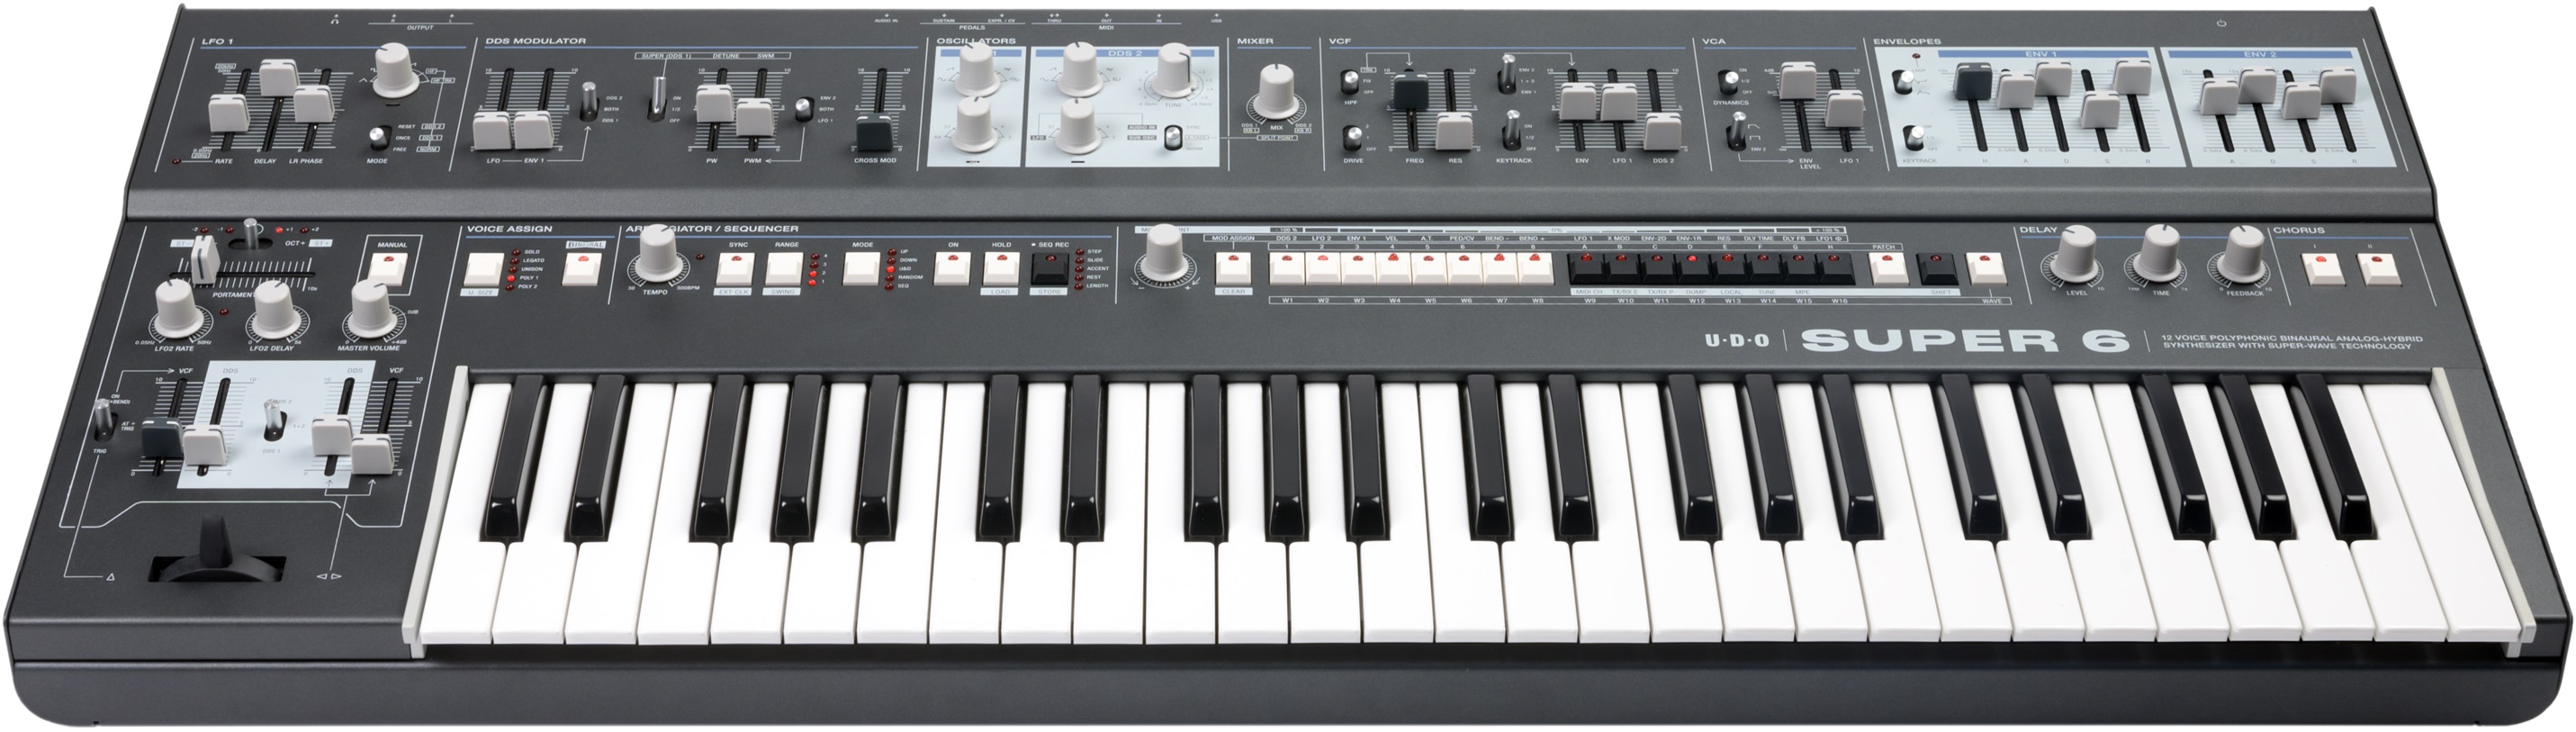 Udo Audio Super 6 Keyboard Black - SynthÉtiseur - Variation 3